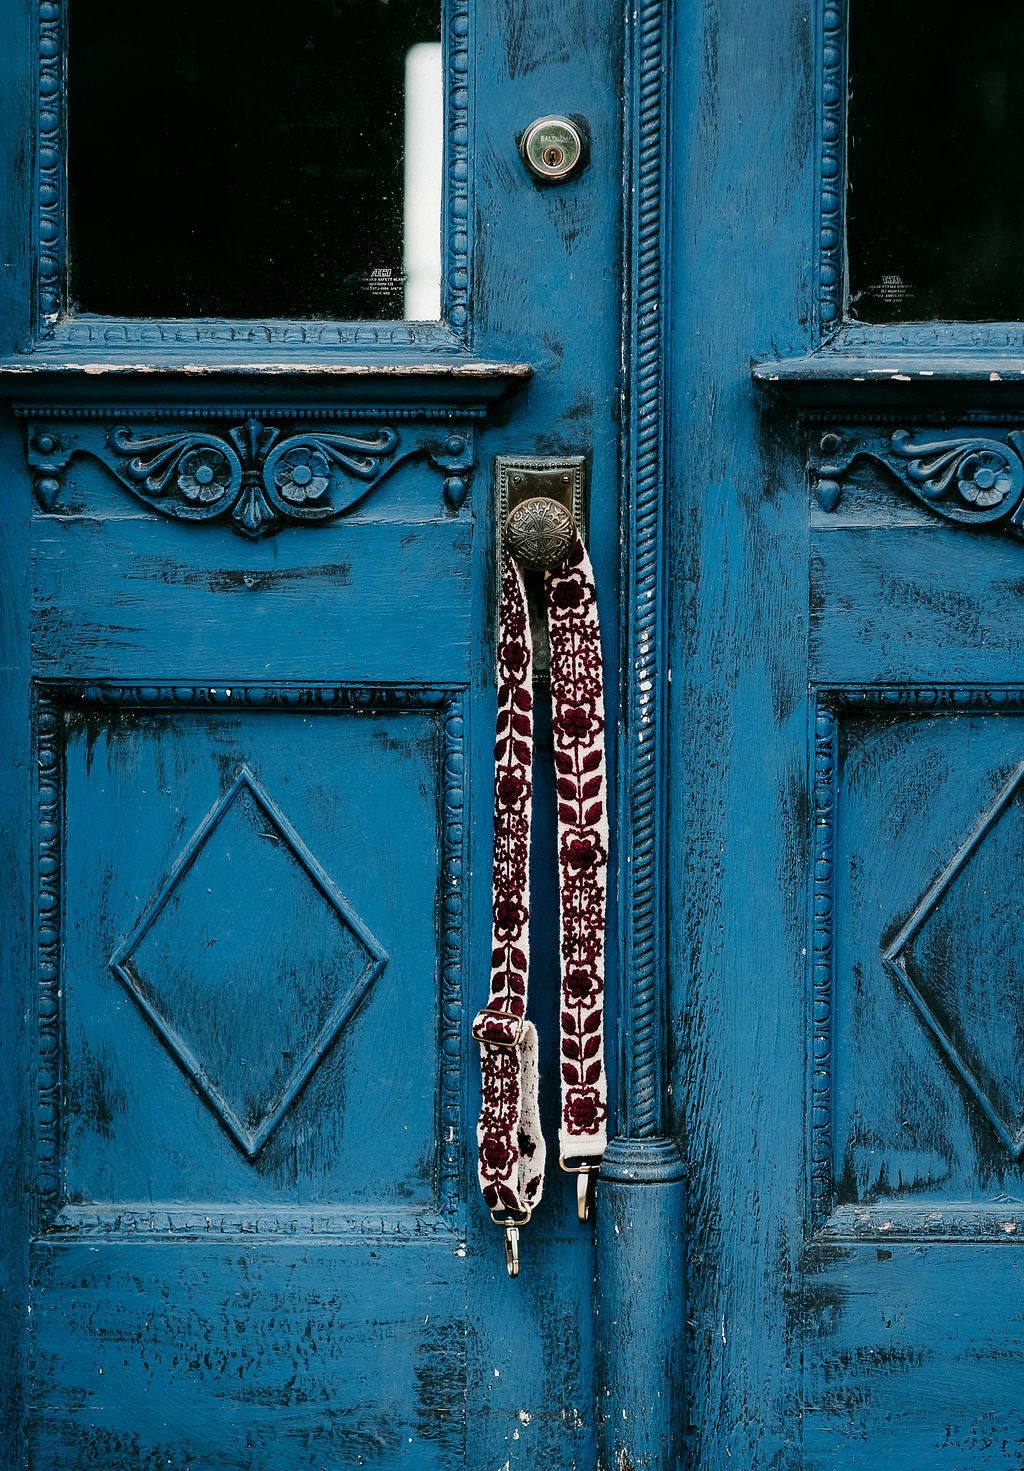 Wendi Adjustable Strap displayed hanging around the doorknob of a blue antique door.